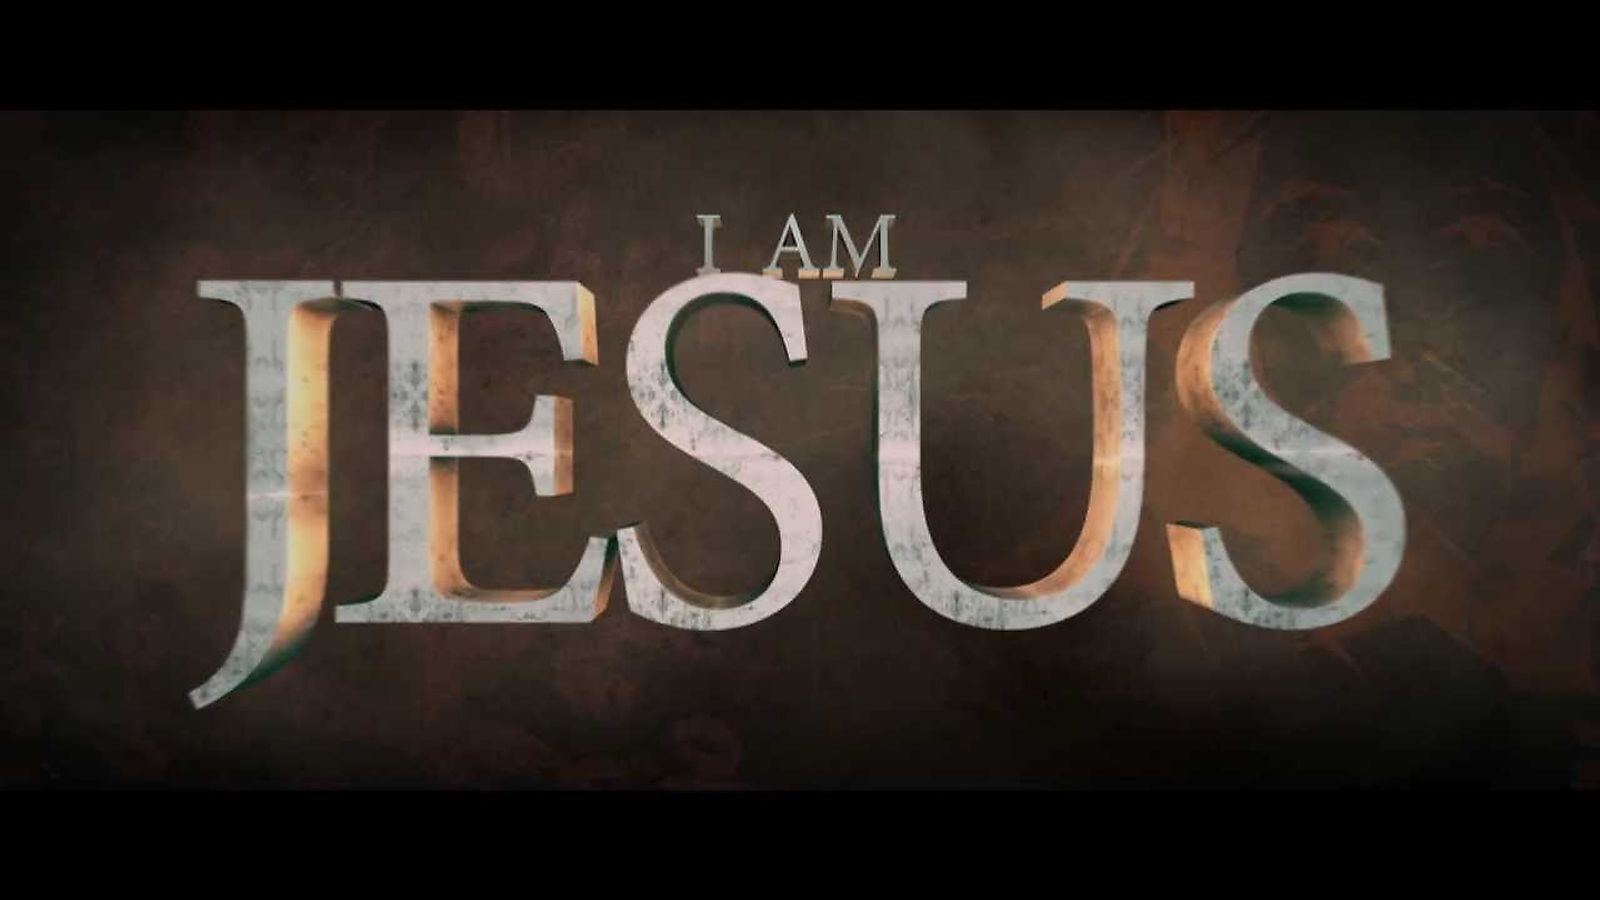 I AM JESUS